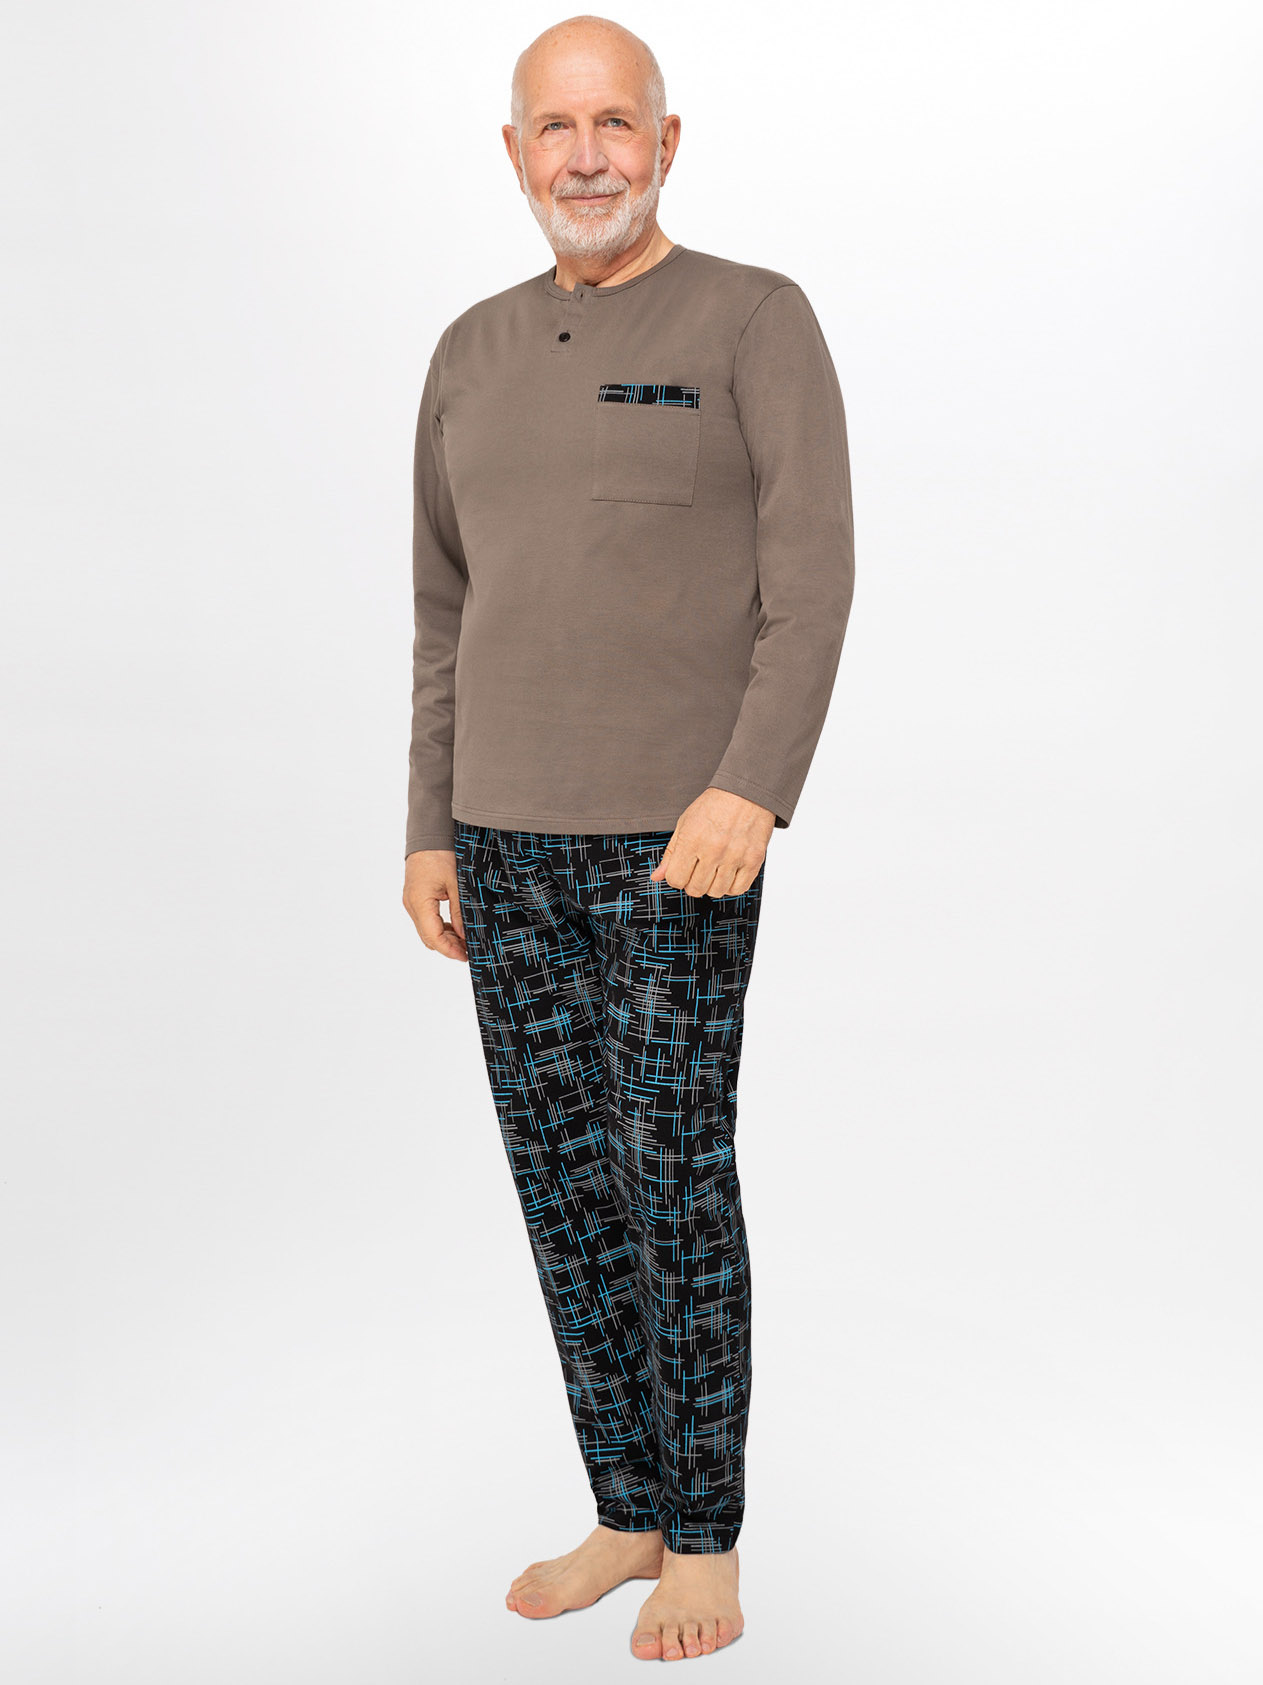 Мужская хлопковая пижама / домашний комплект с геометрическим узором Martel 412 Marcel